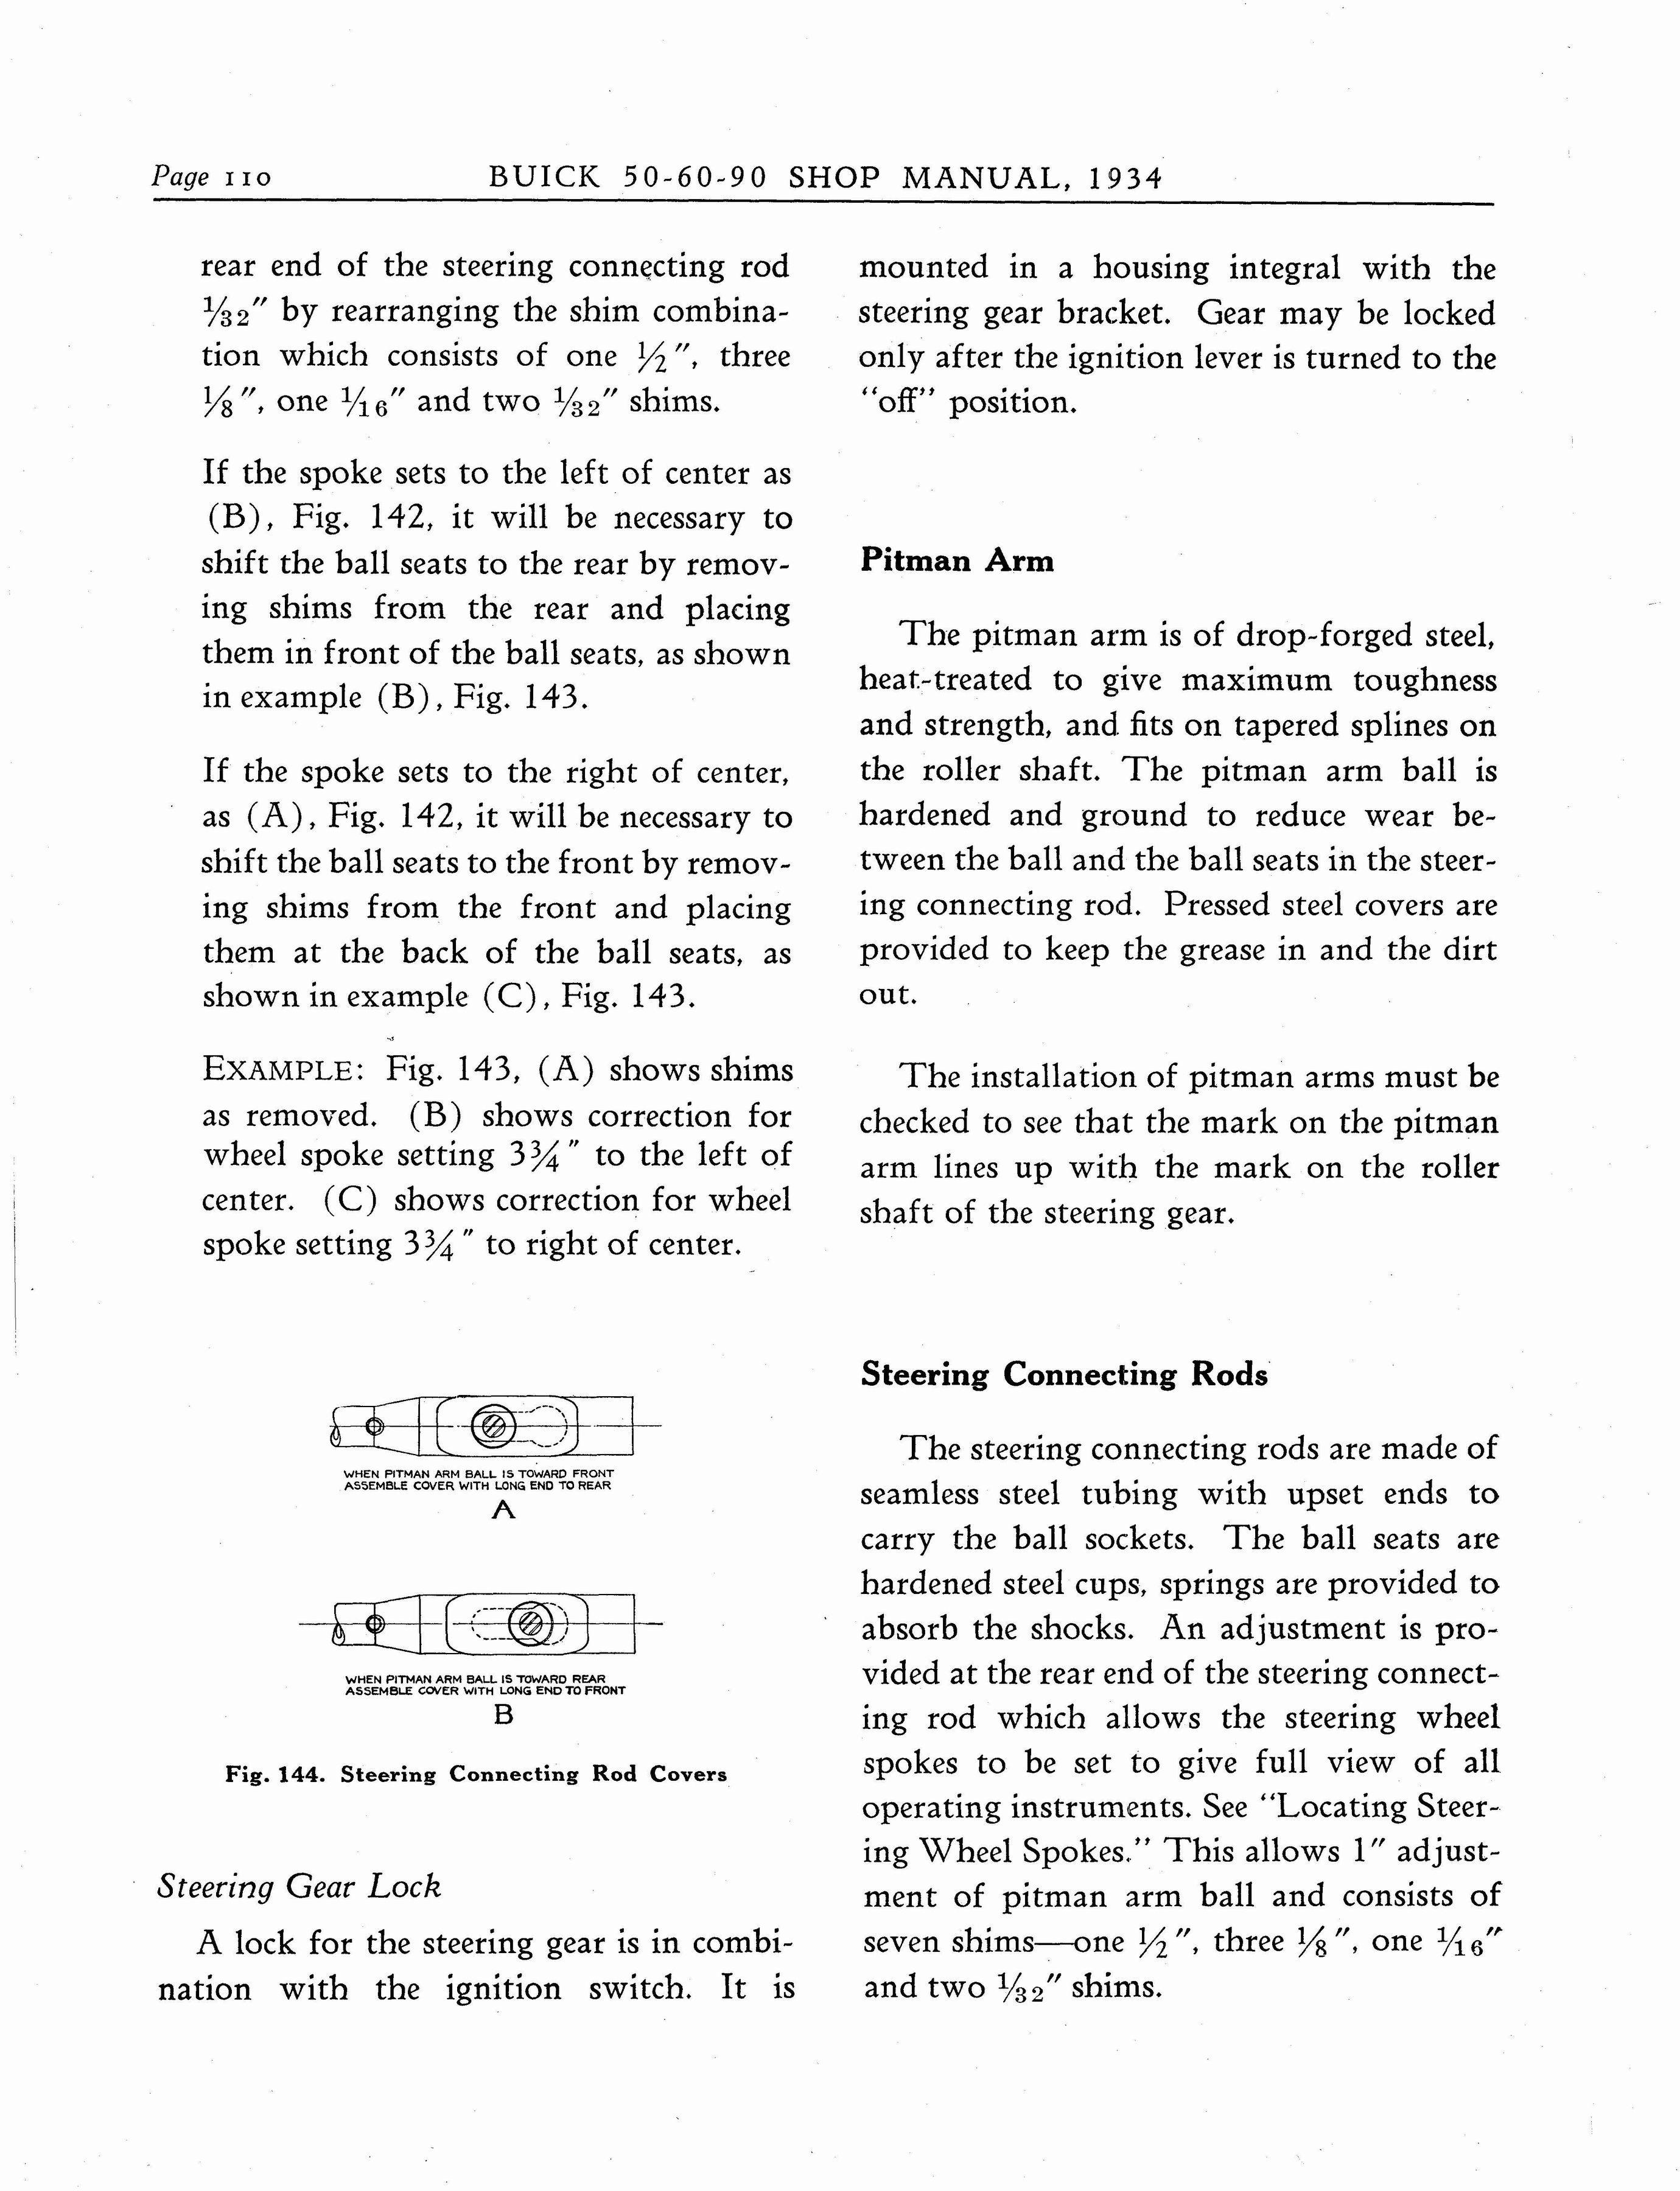 n_1934 Buick Series 50-60-90 Shop Manual_Page_111.jpg